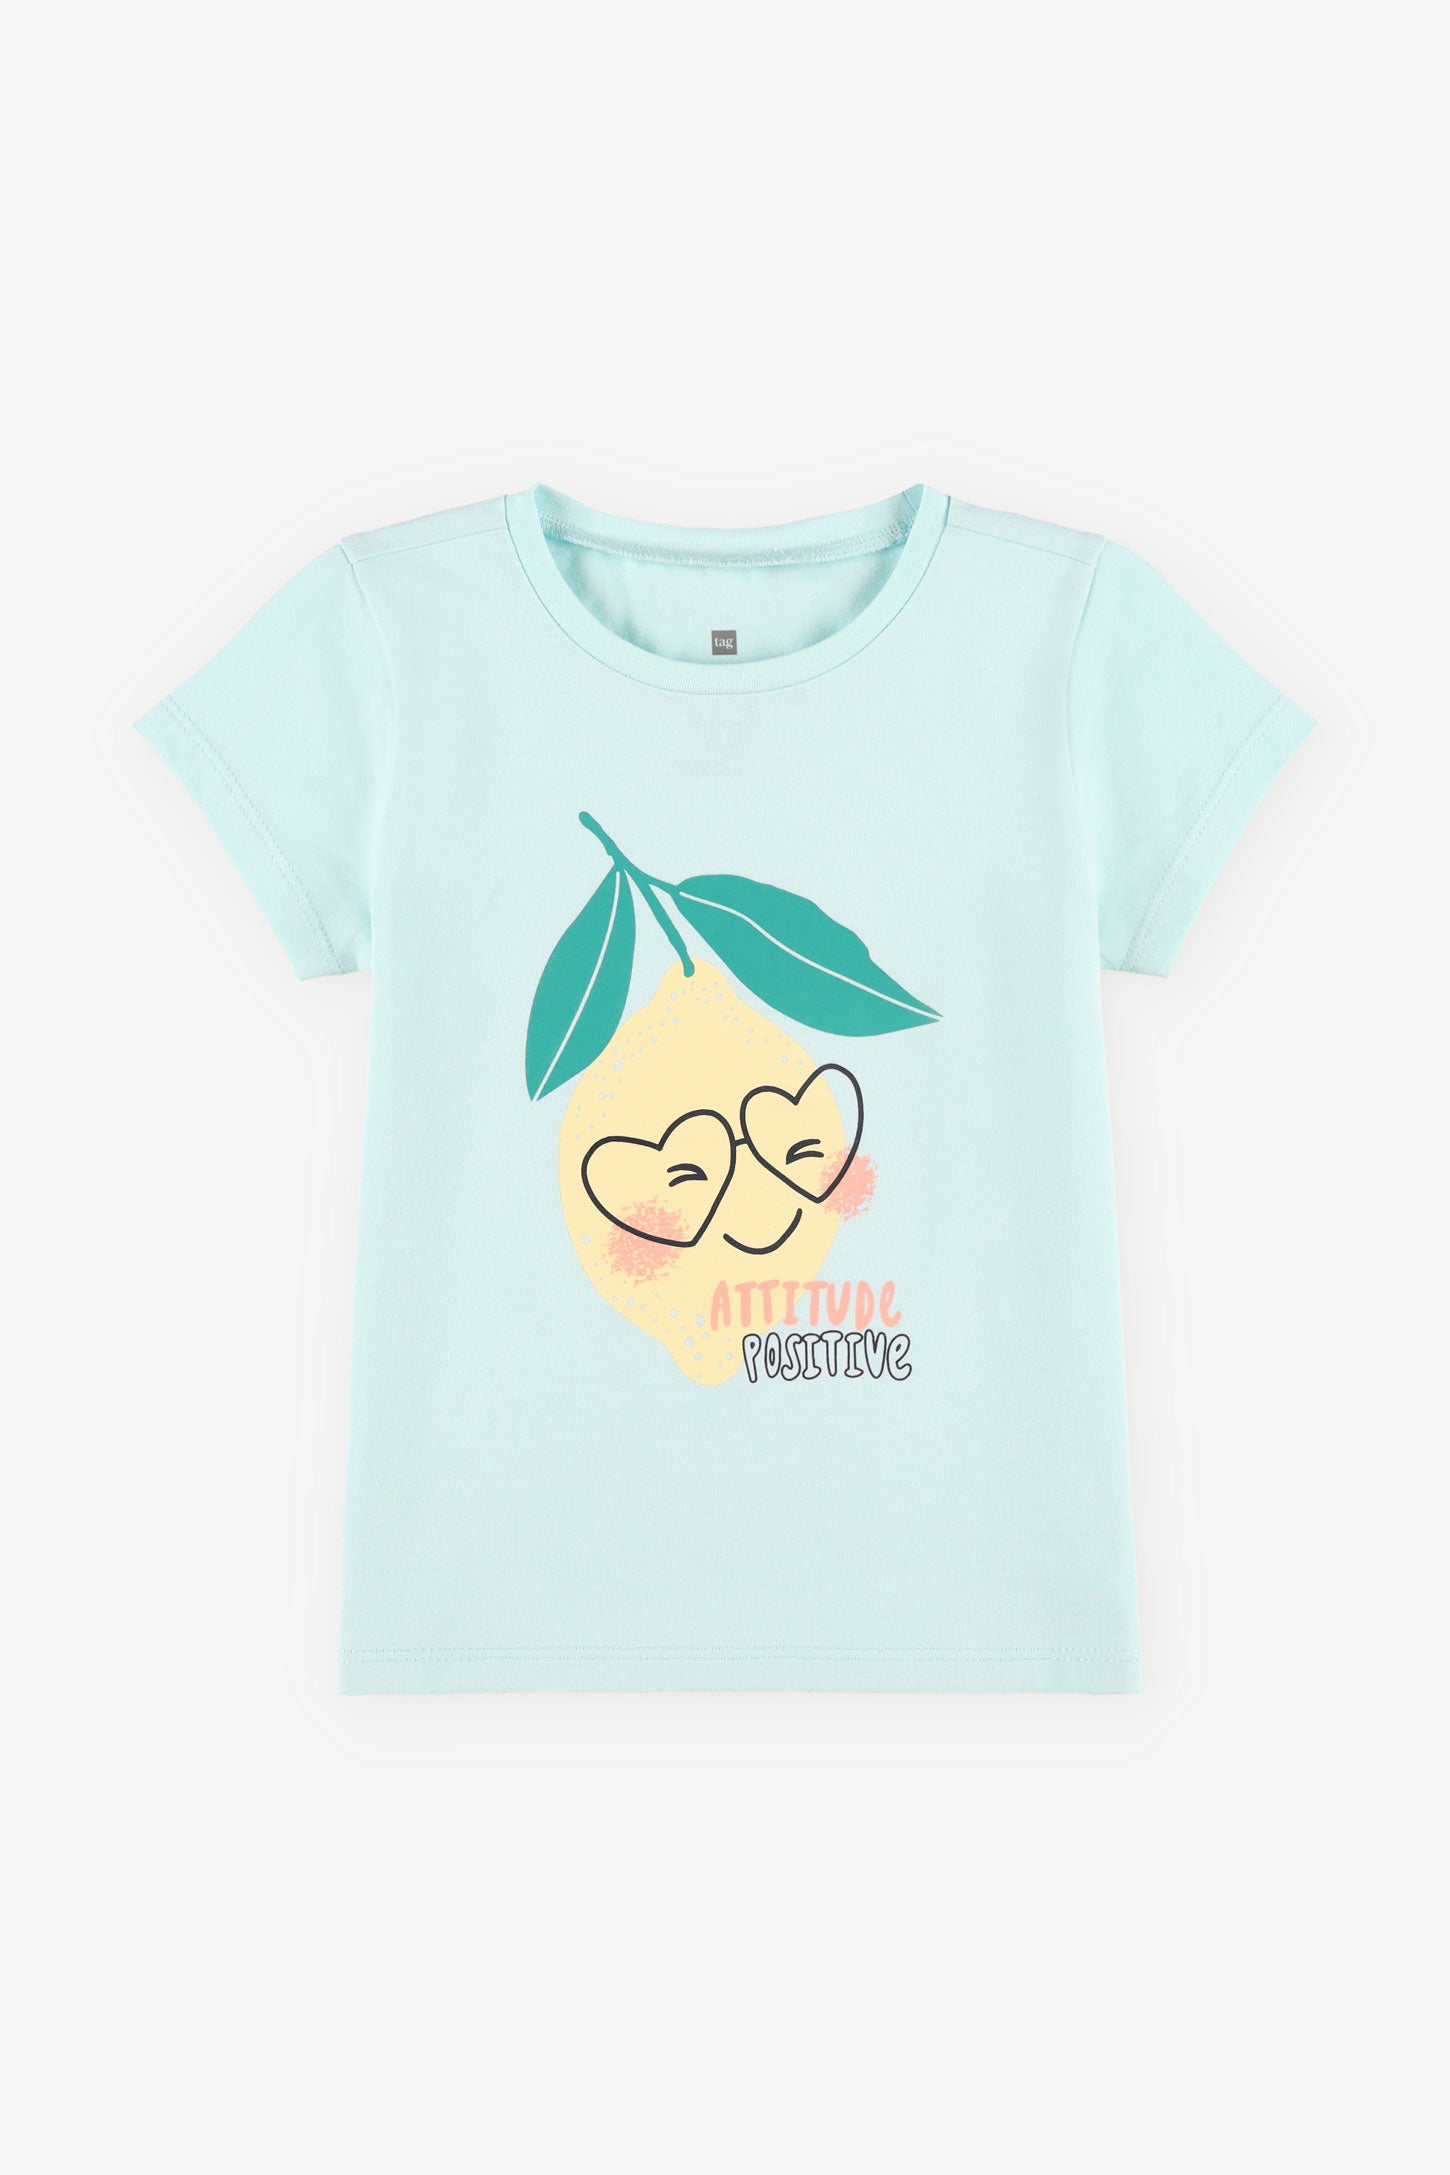 T-shirt rond imprimé coton, 2T-3T, 2/15$ - Bébé fille && BLEU PALE